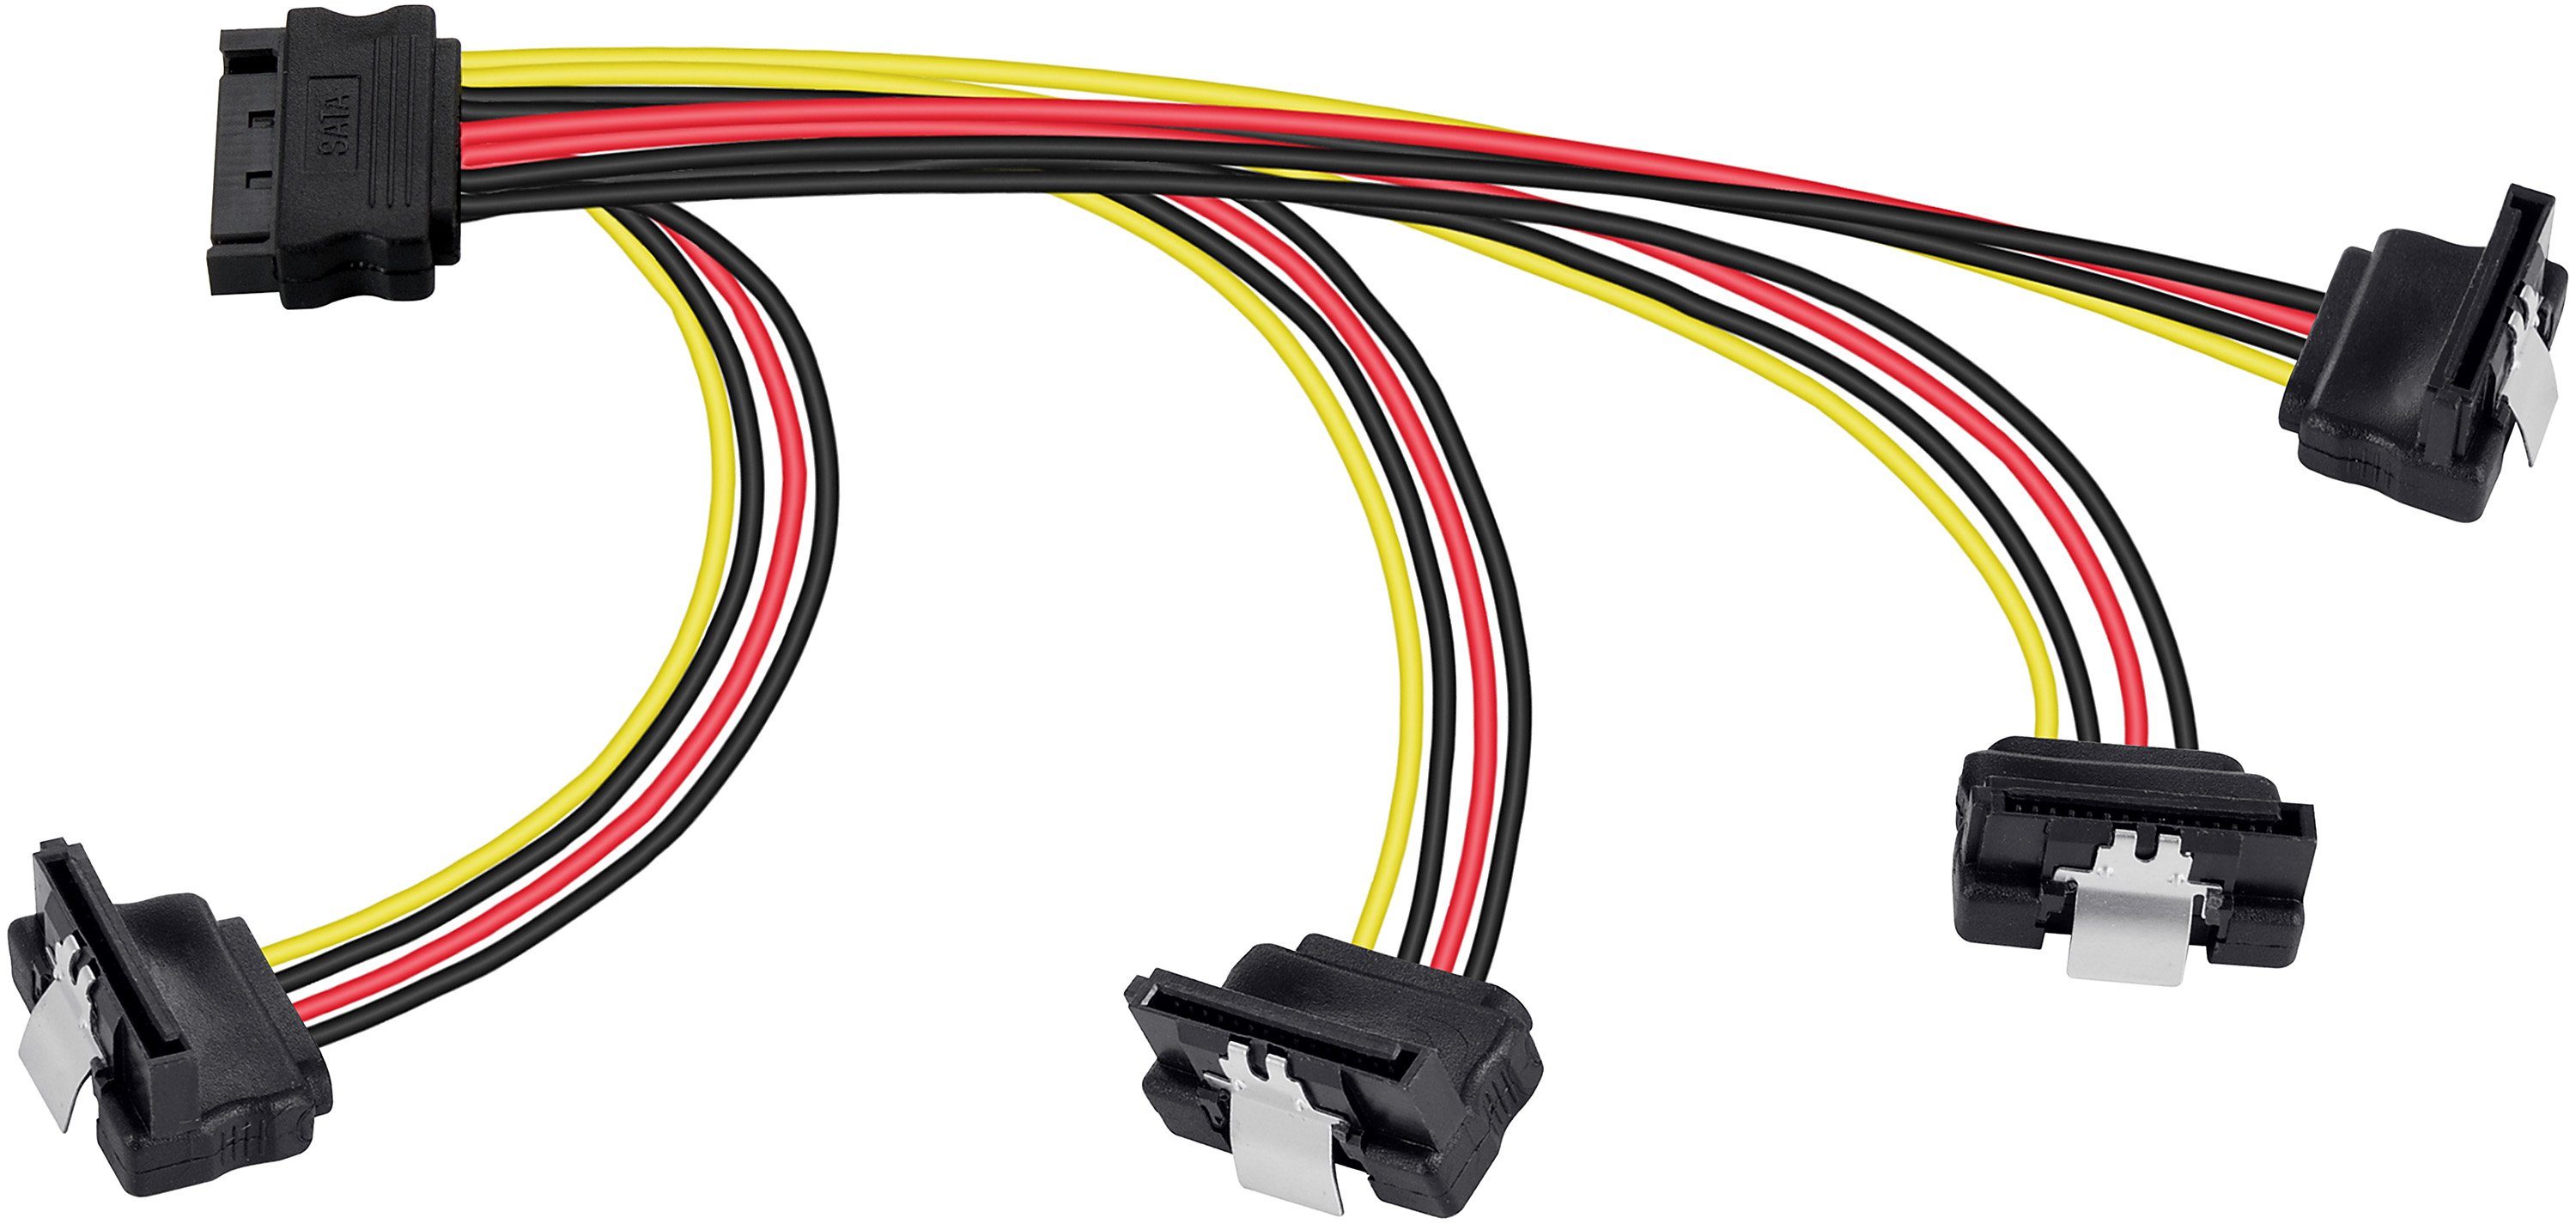 Poppstar SATA Stromkabel Verteiler 4-fach für HDD, SSD, Festplatte, Motherboard Stromkabel, Adapter 20cm 1x Stecker (m) auf 4x Buchse (w) gewinkelt Splitter gerade/gewinkelt (20cm) | Stromversorgungskabel